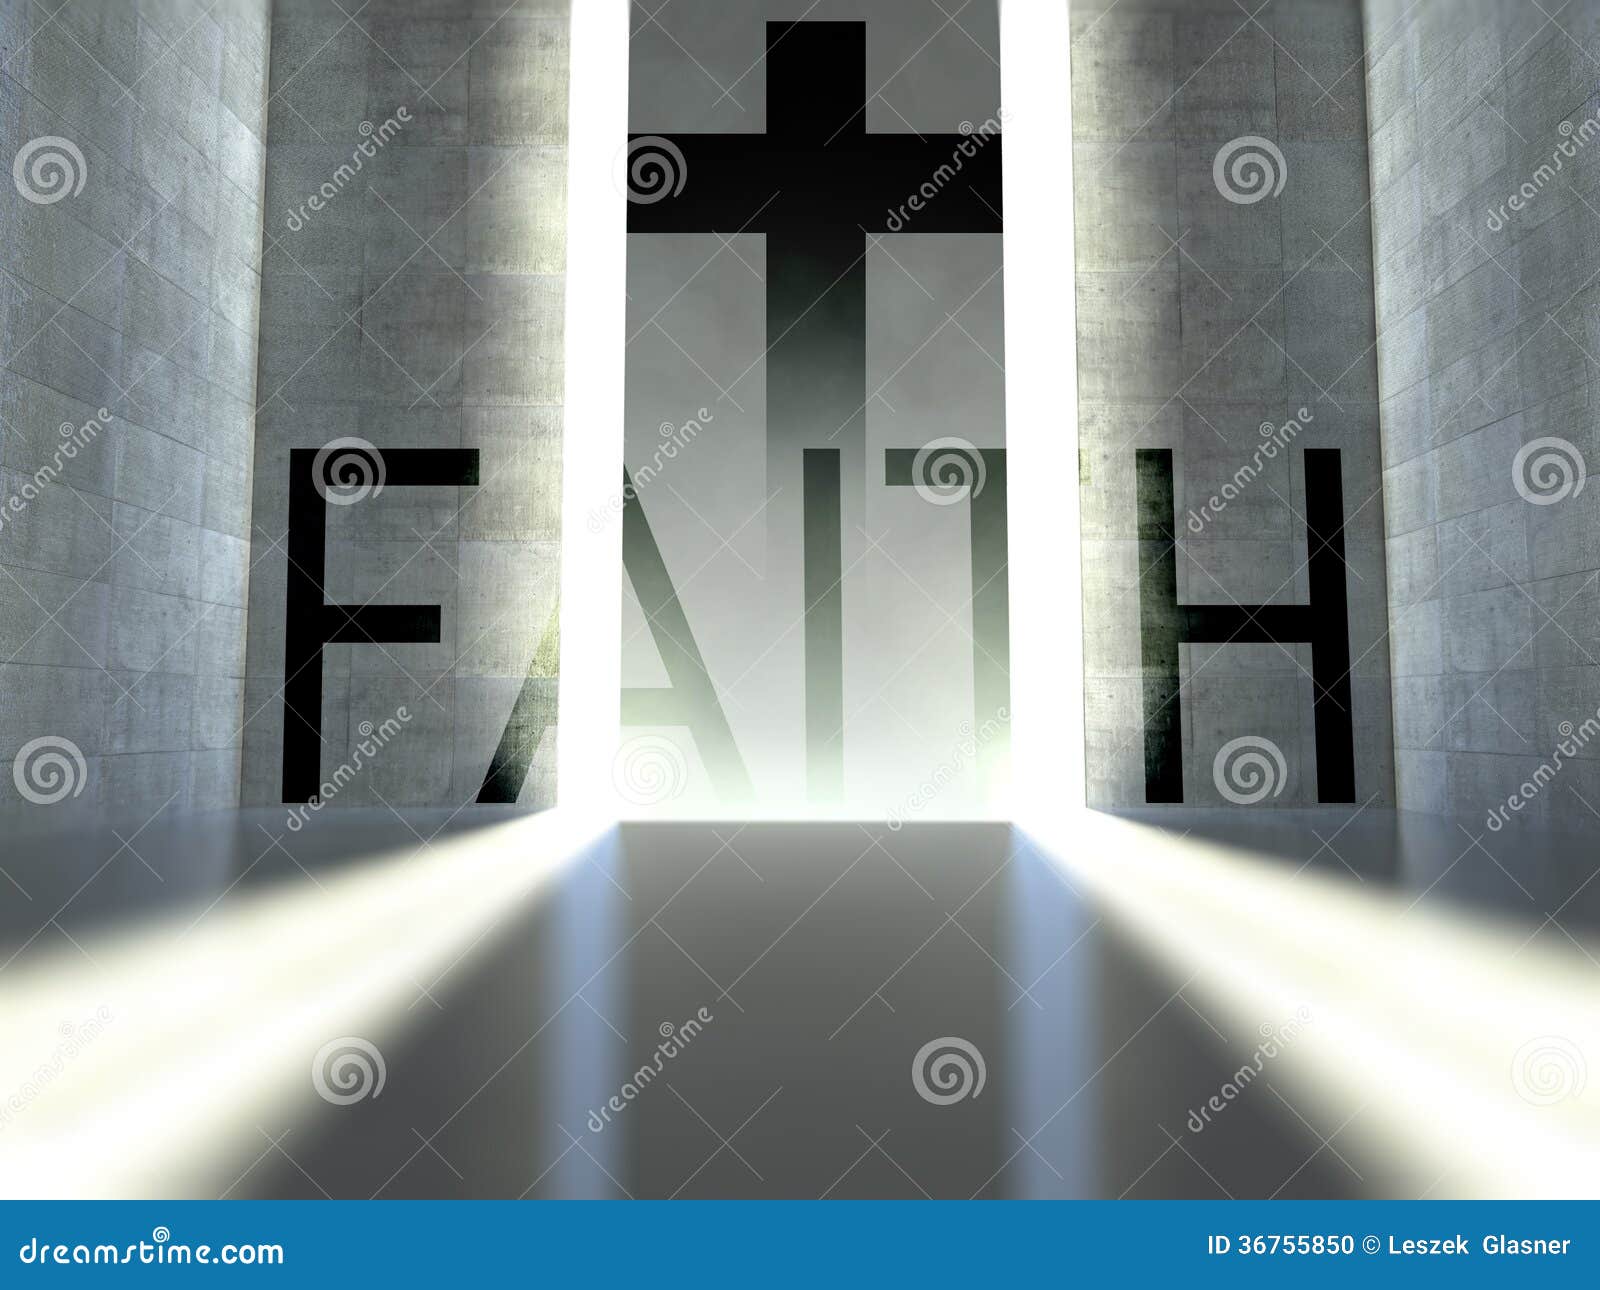 christian cross on wall, concept of faith